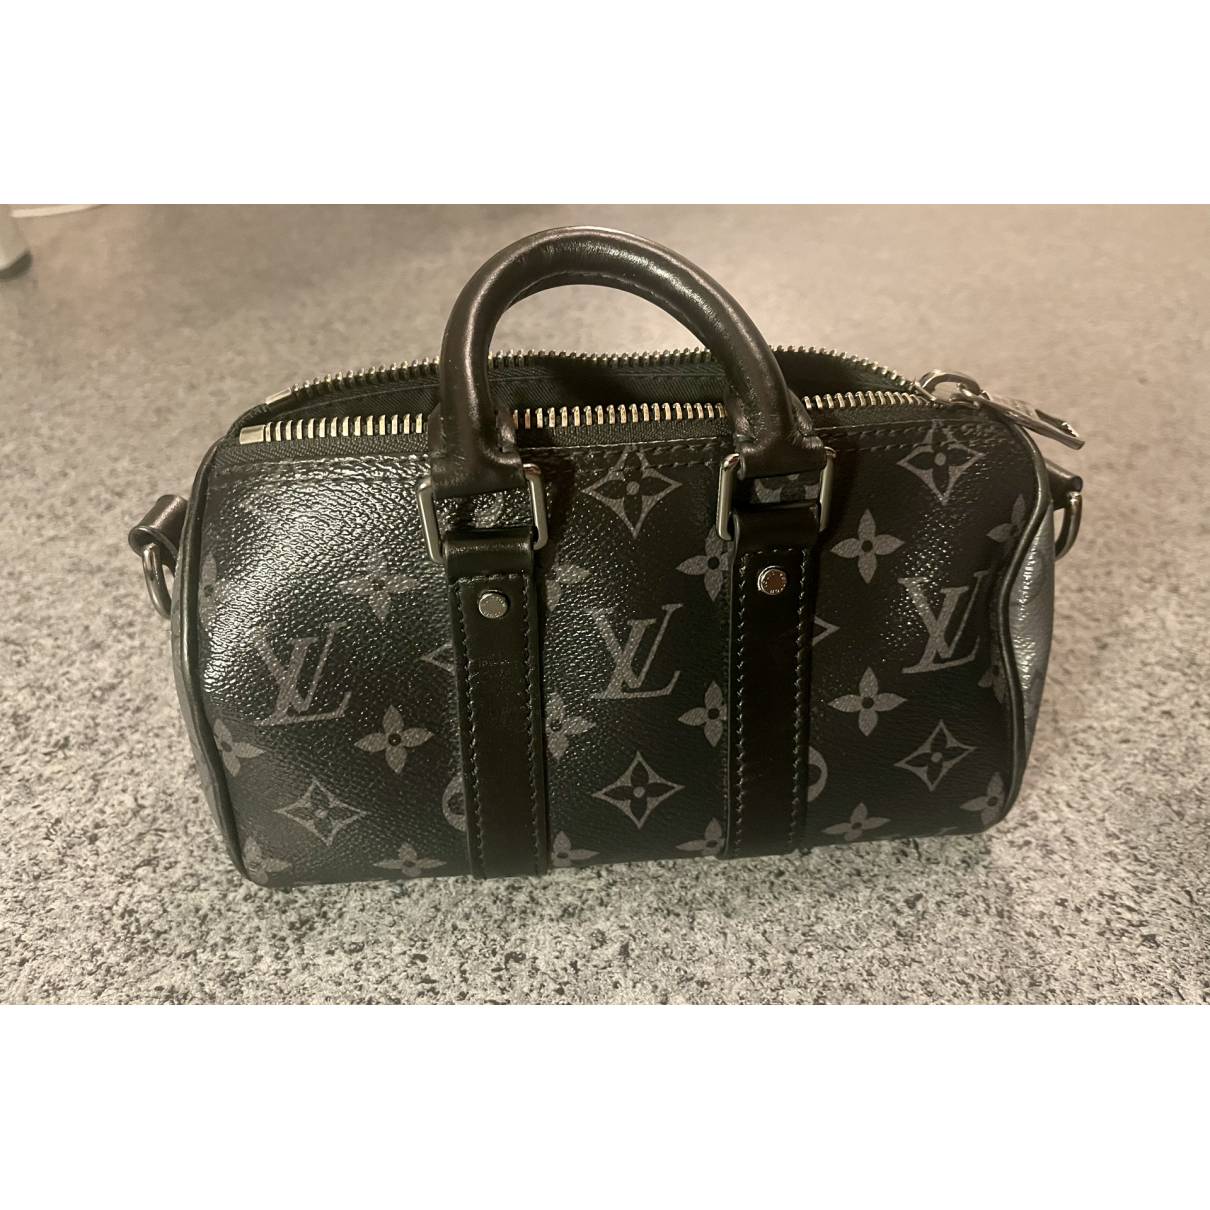 Men's Christopher XS bag, LOUIS VUITTON